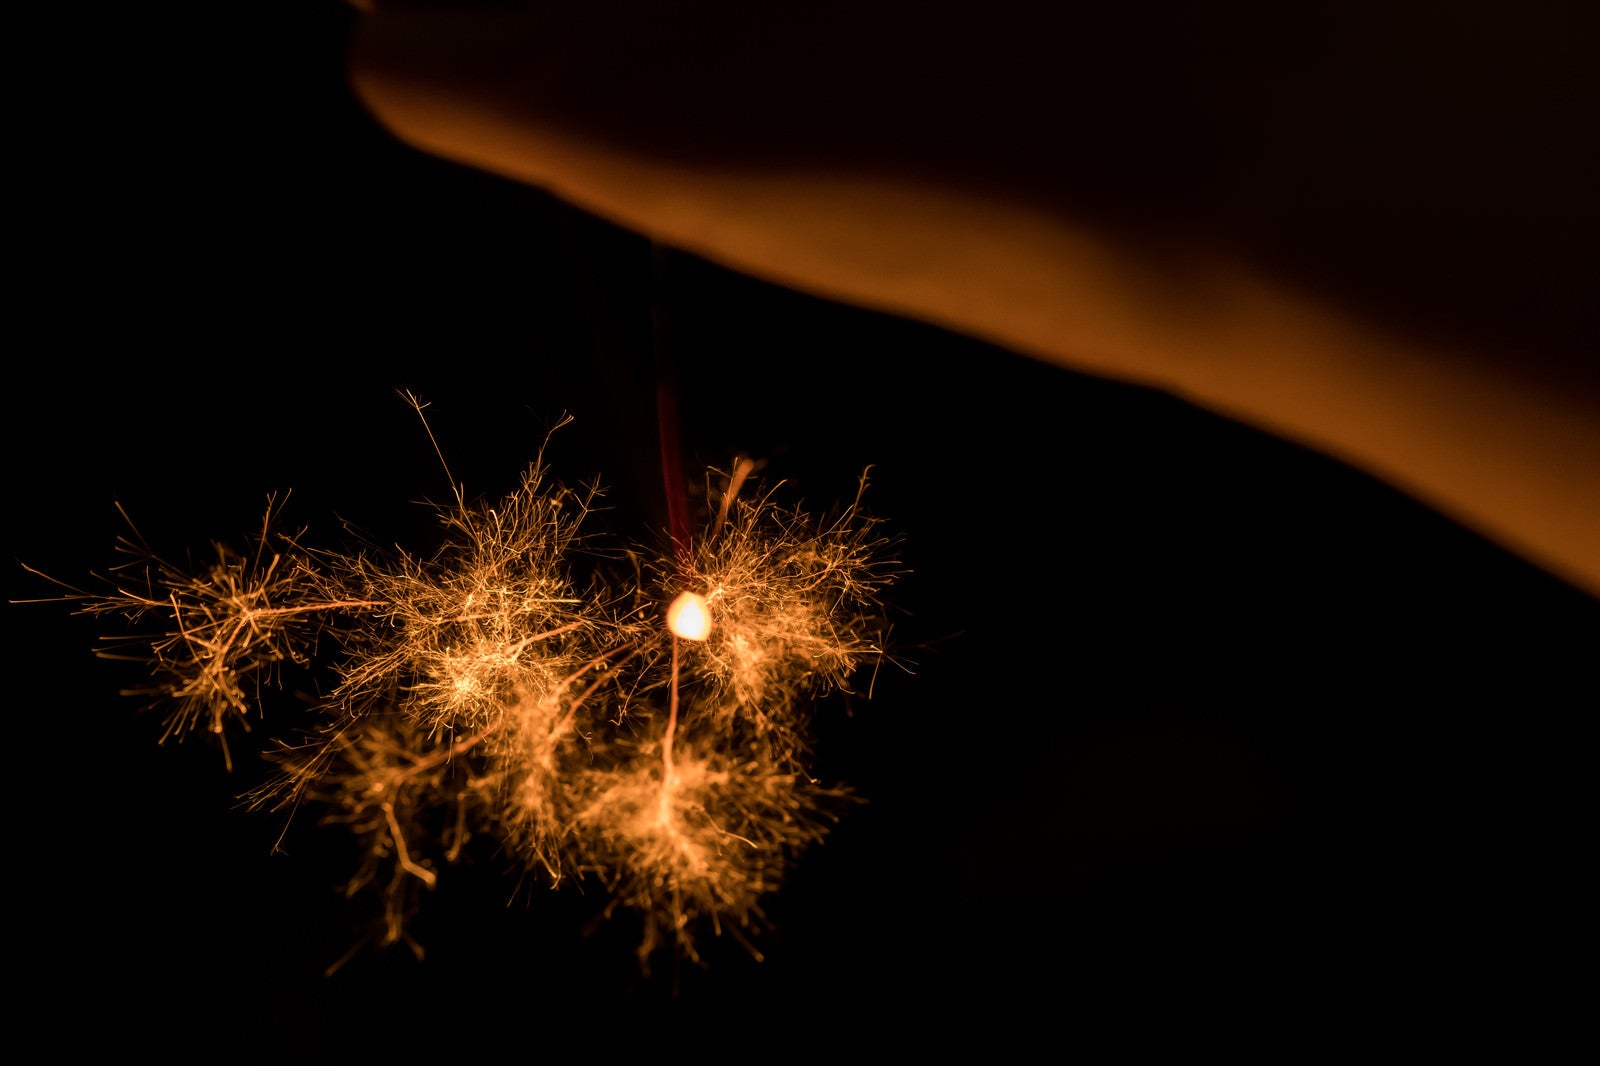 「線香花火で夏を楽しむ」の写真